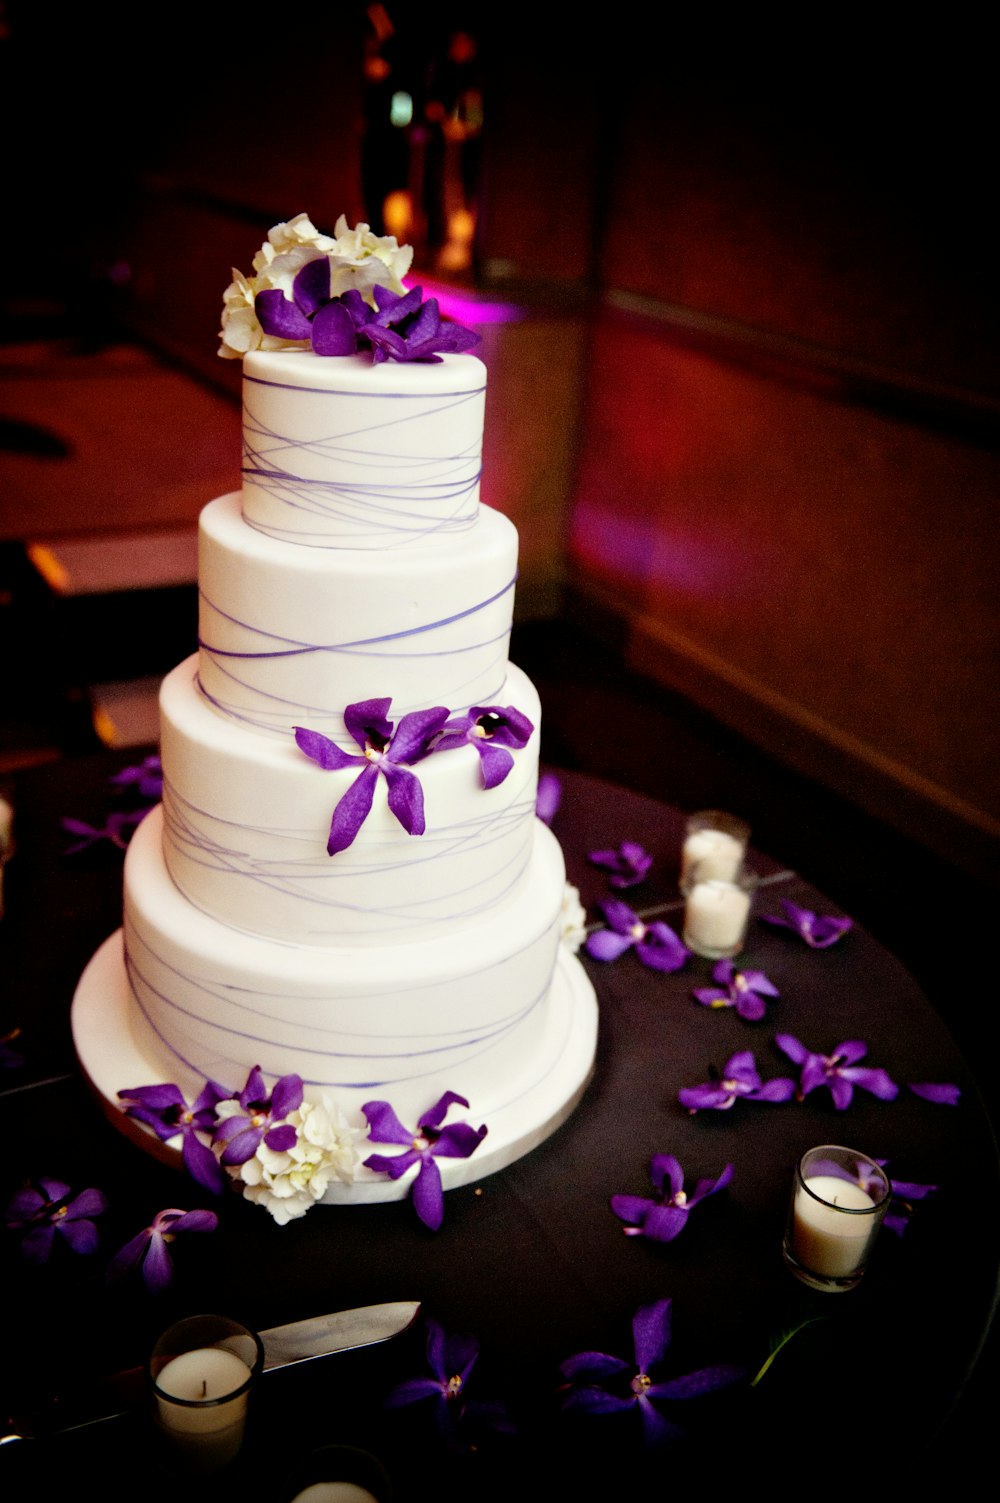 Gâteau blanc à 3 étages avec des fleurs violettes